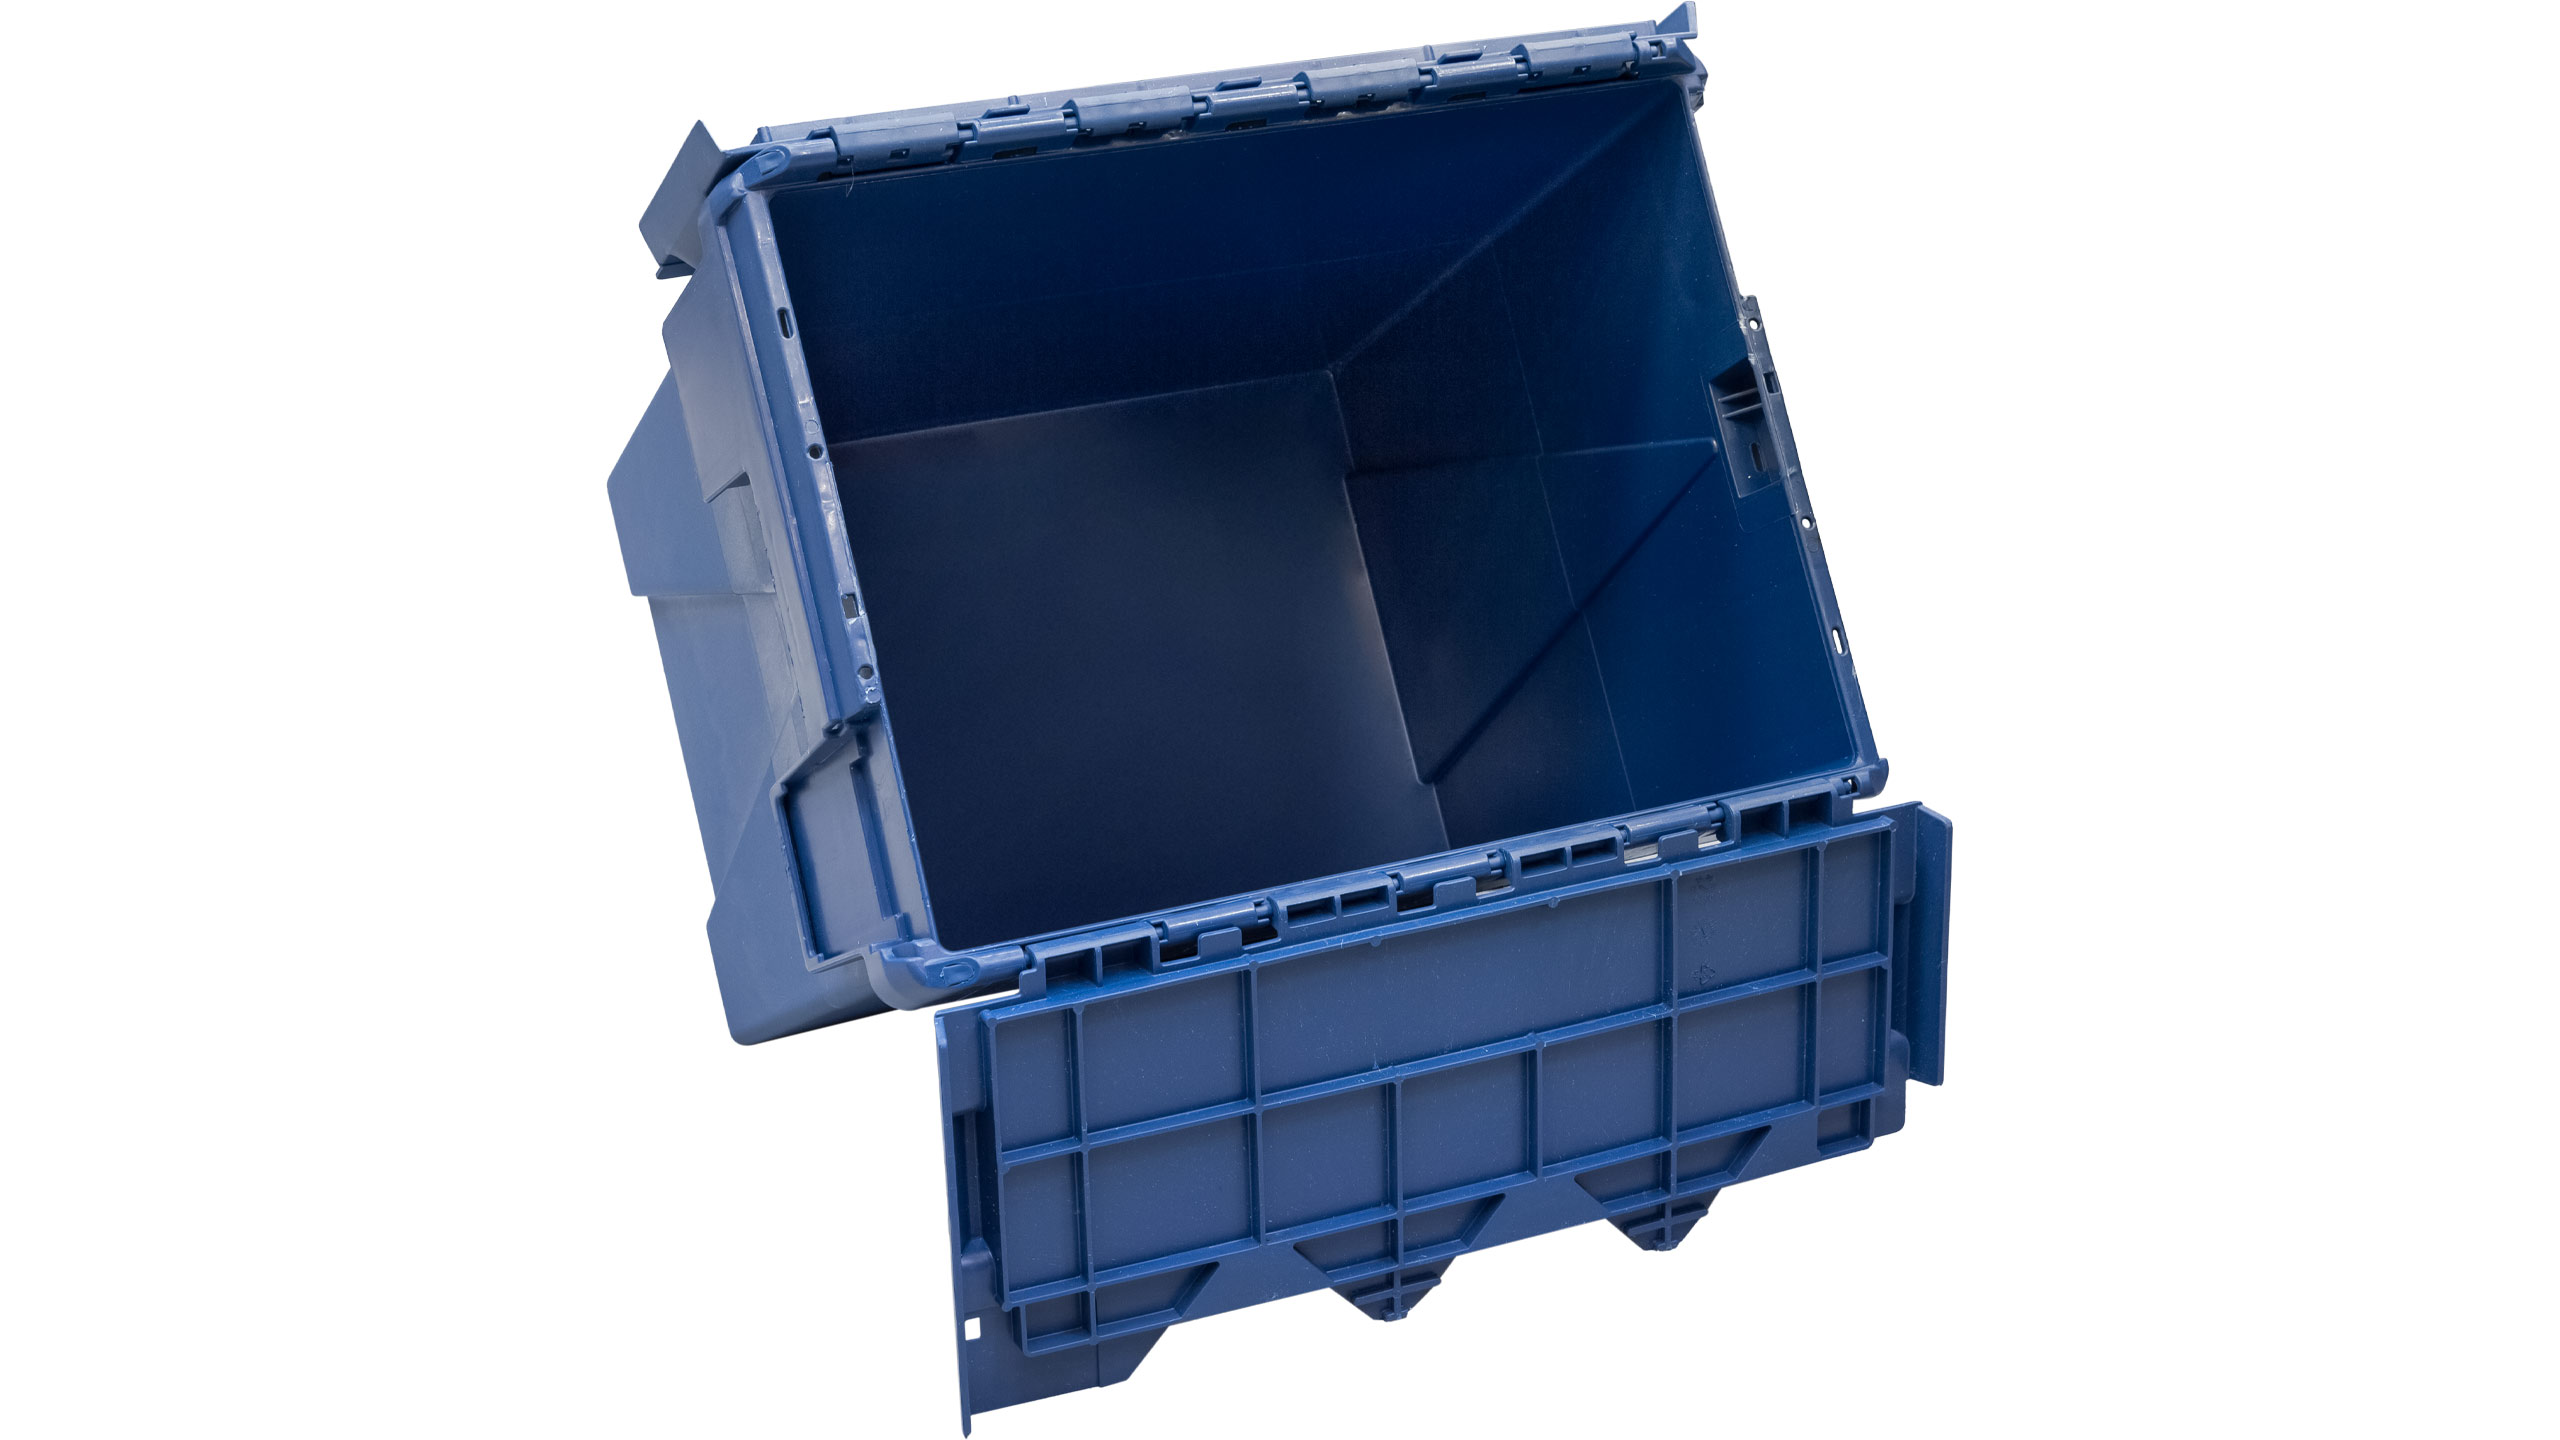 Пластиковый контейнер с крышкой SPKM 4336